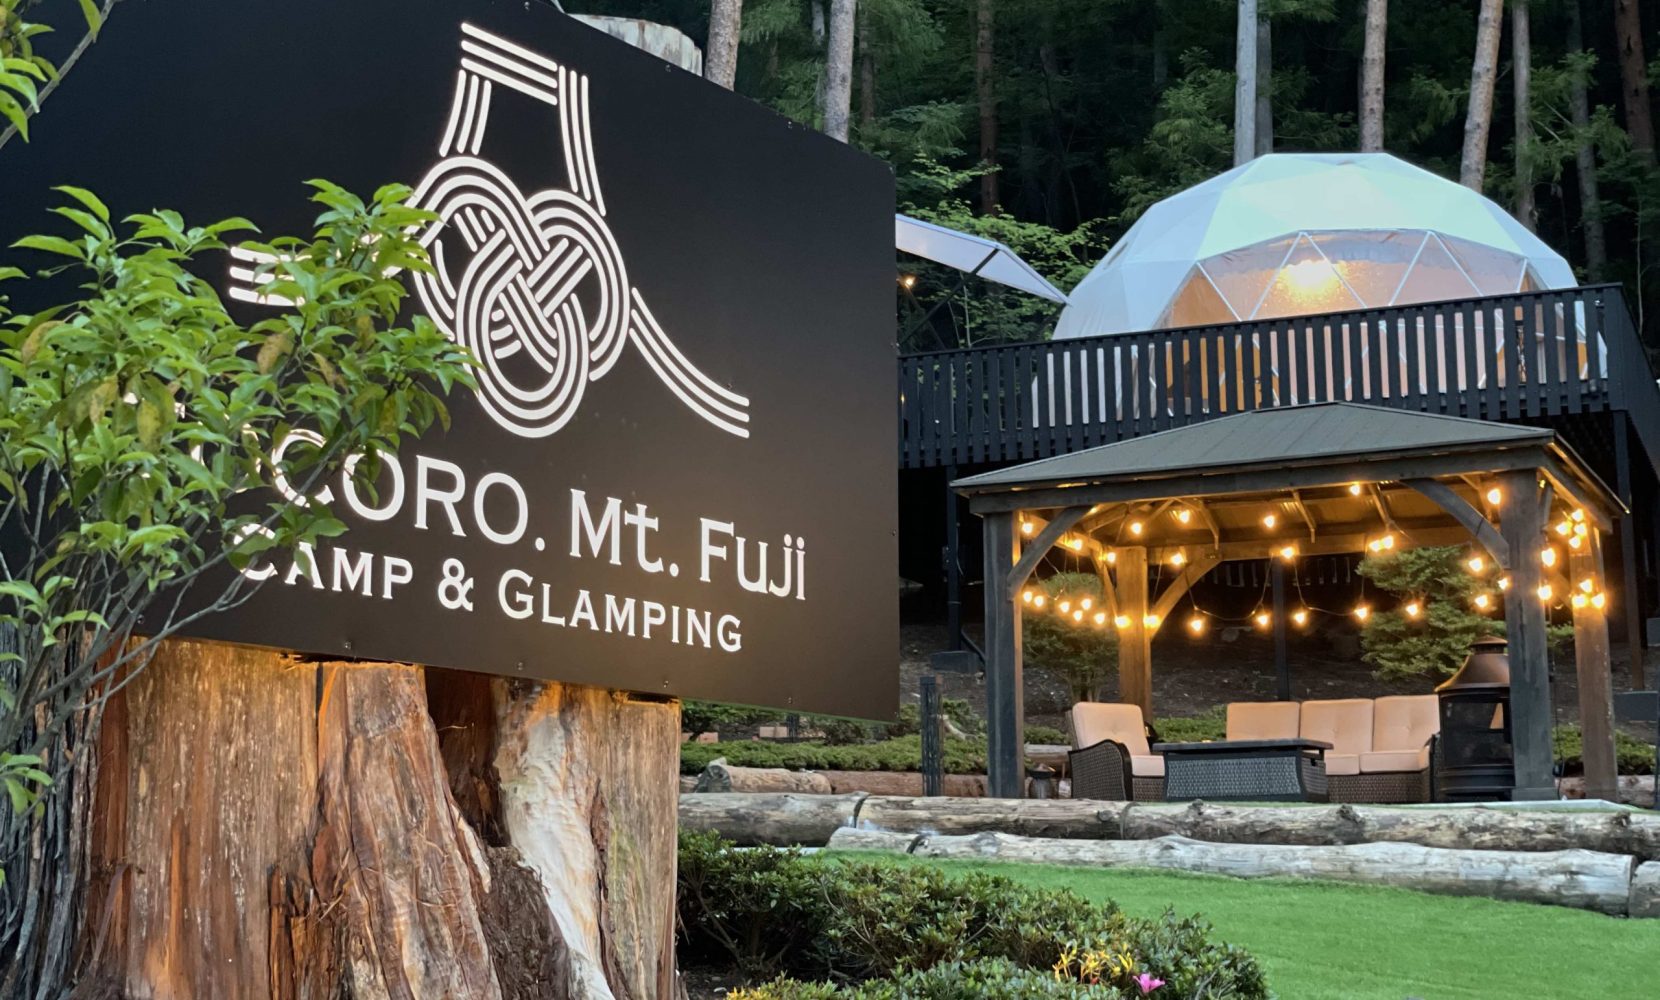 Tocoro Mt. Fuji Camp & Glamping